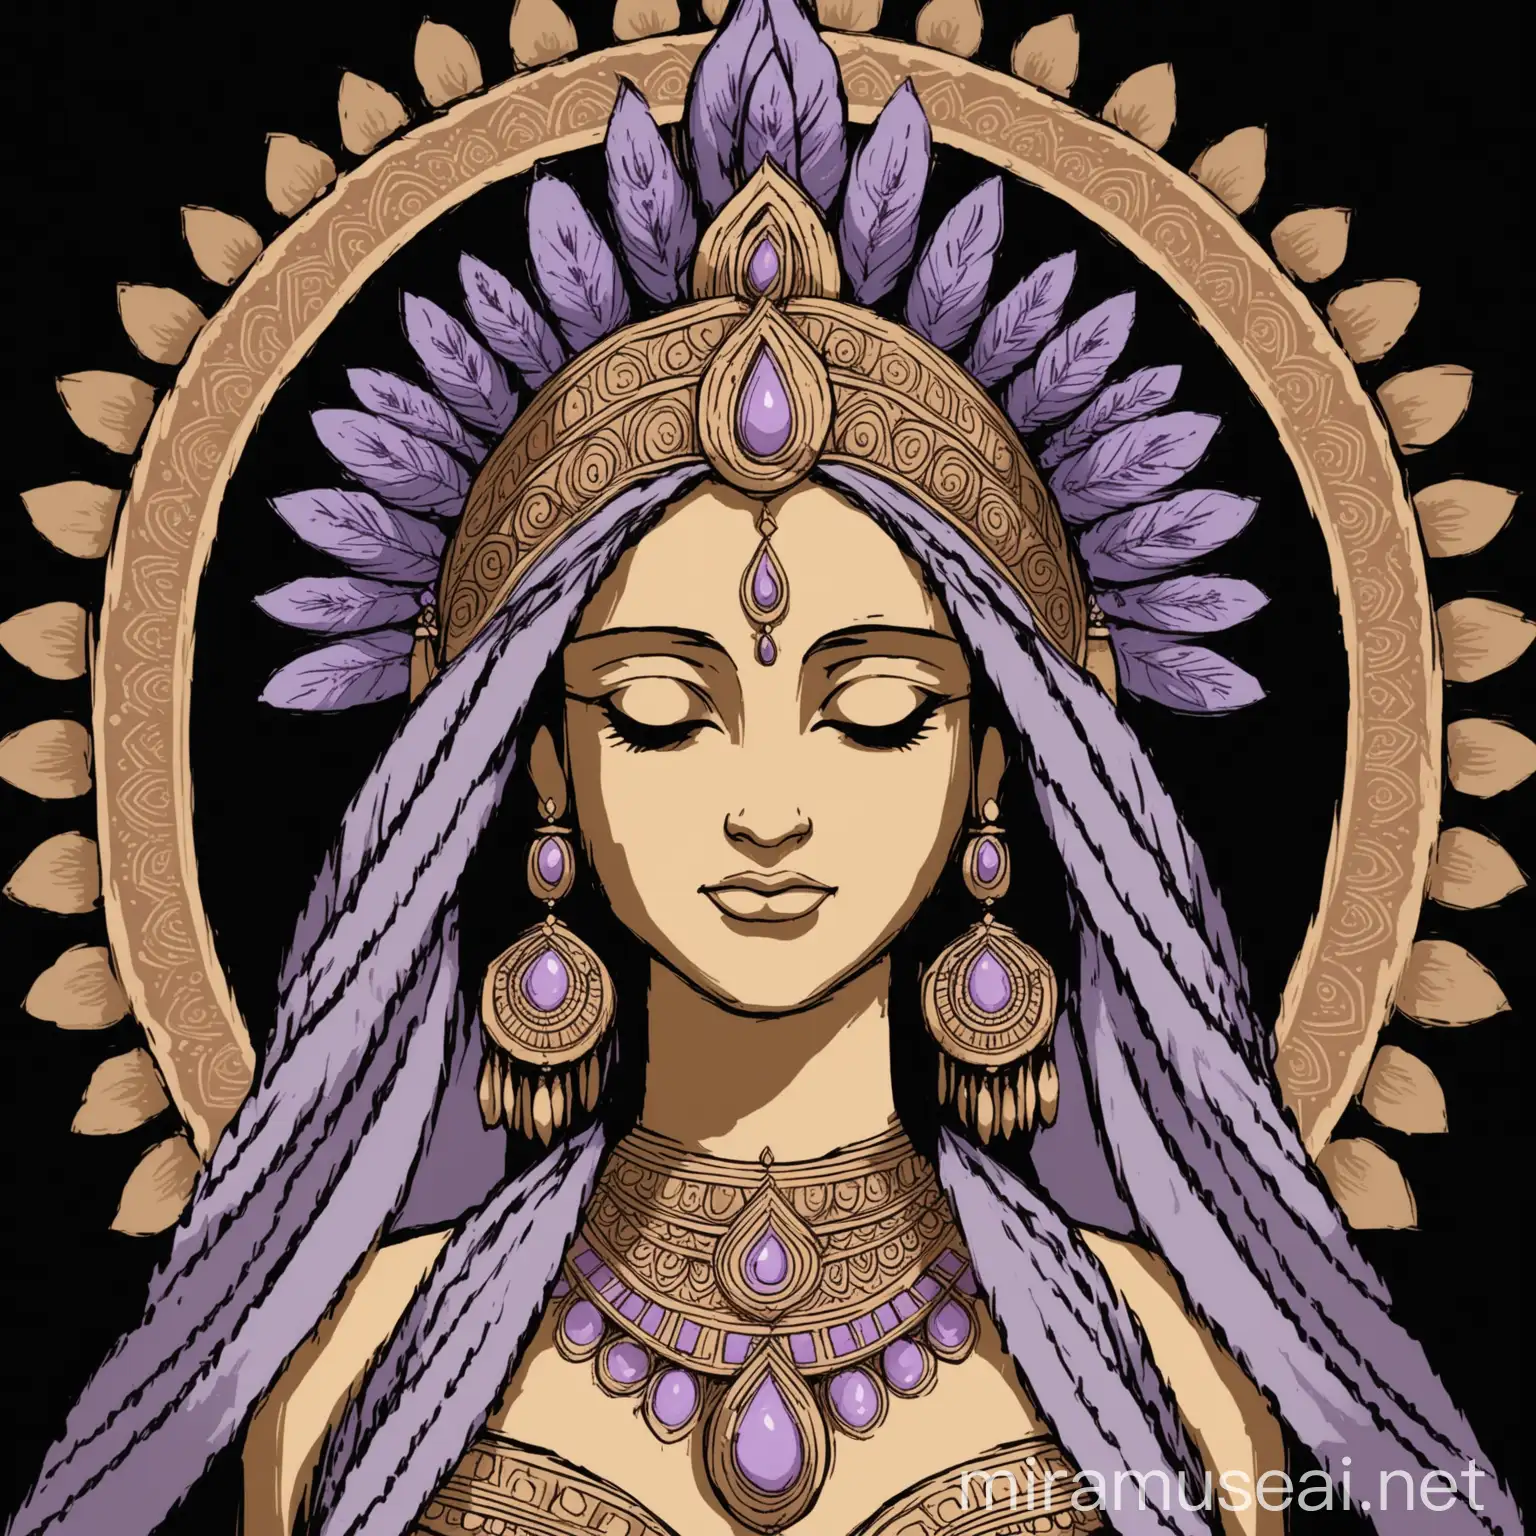 рисунок богини 40 лет по плечи, на черном фоне, головной убор в индийском стиле, цвета сиреневый и бежевый